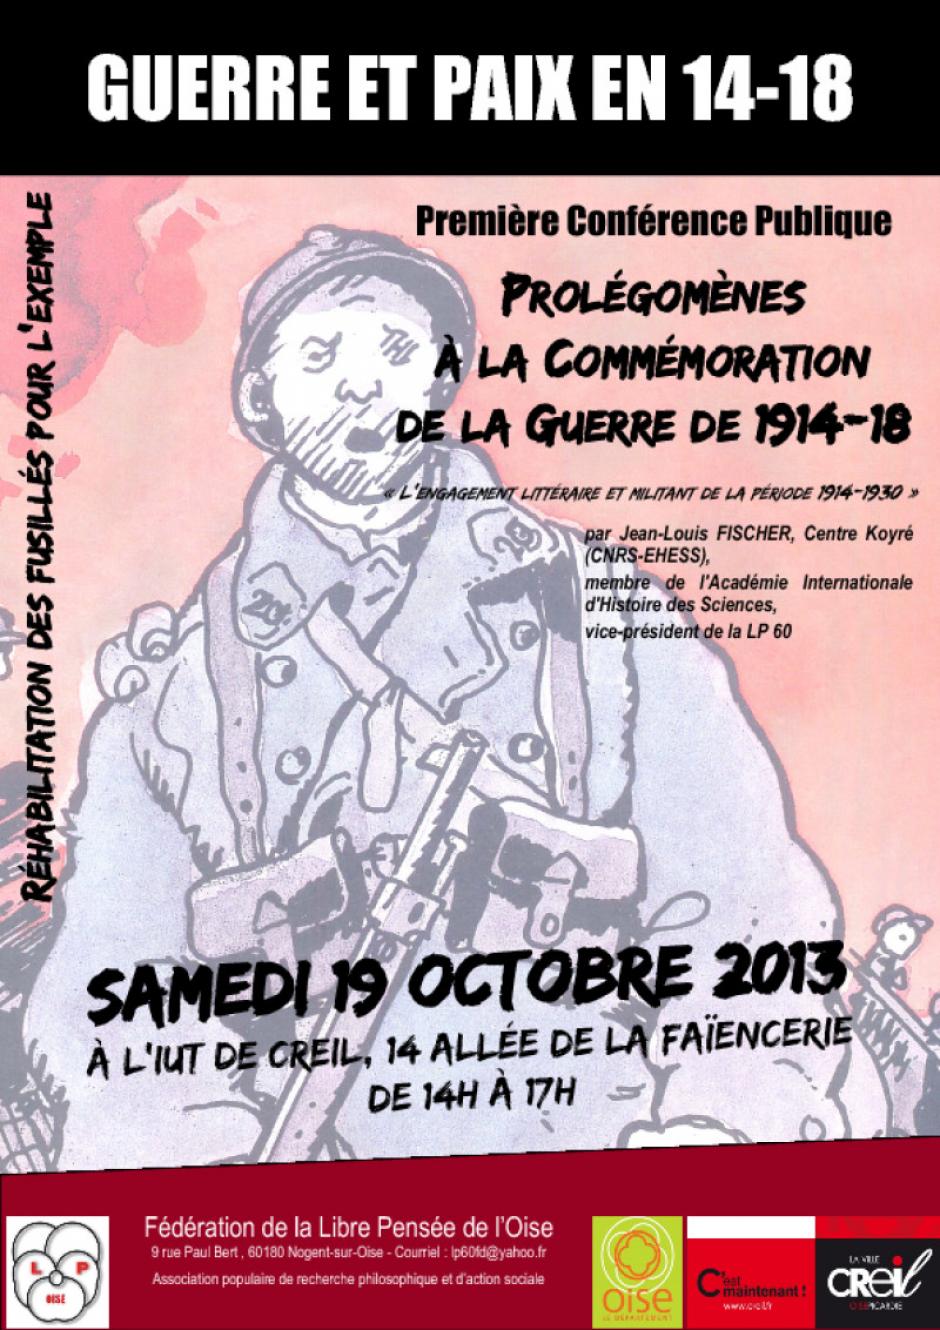 19 octobre, Creil - Libre Pensée Oise-Prolégomènes à la commémoration de la guerre de 1914-18